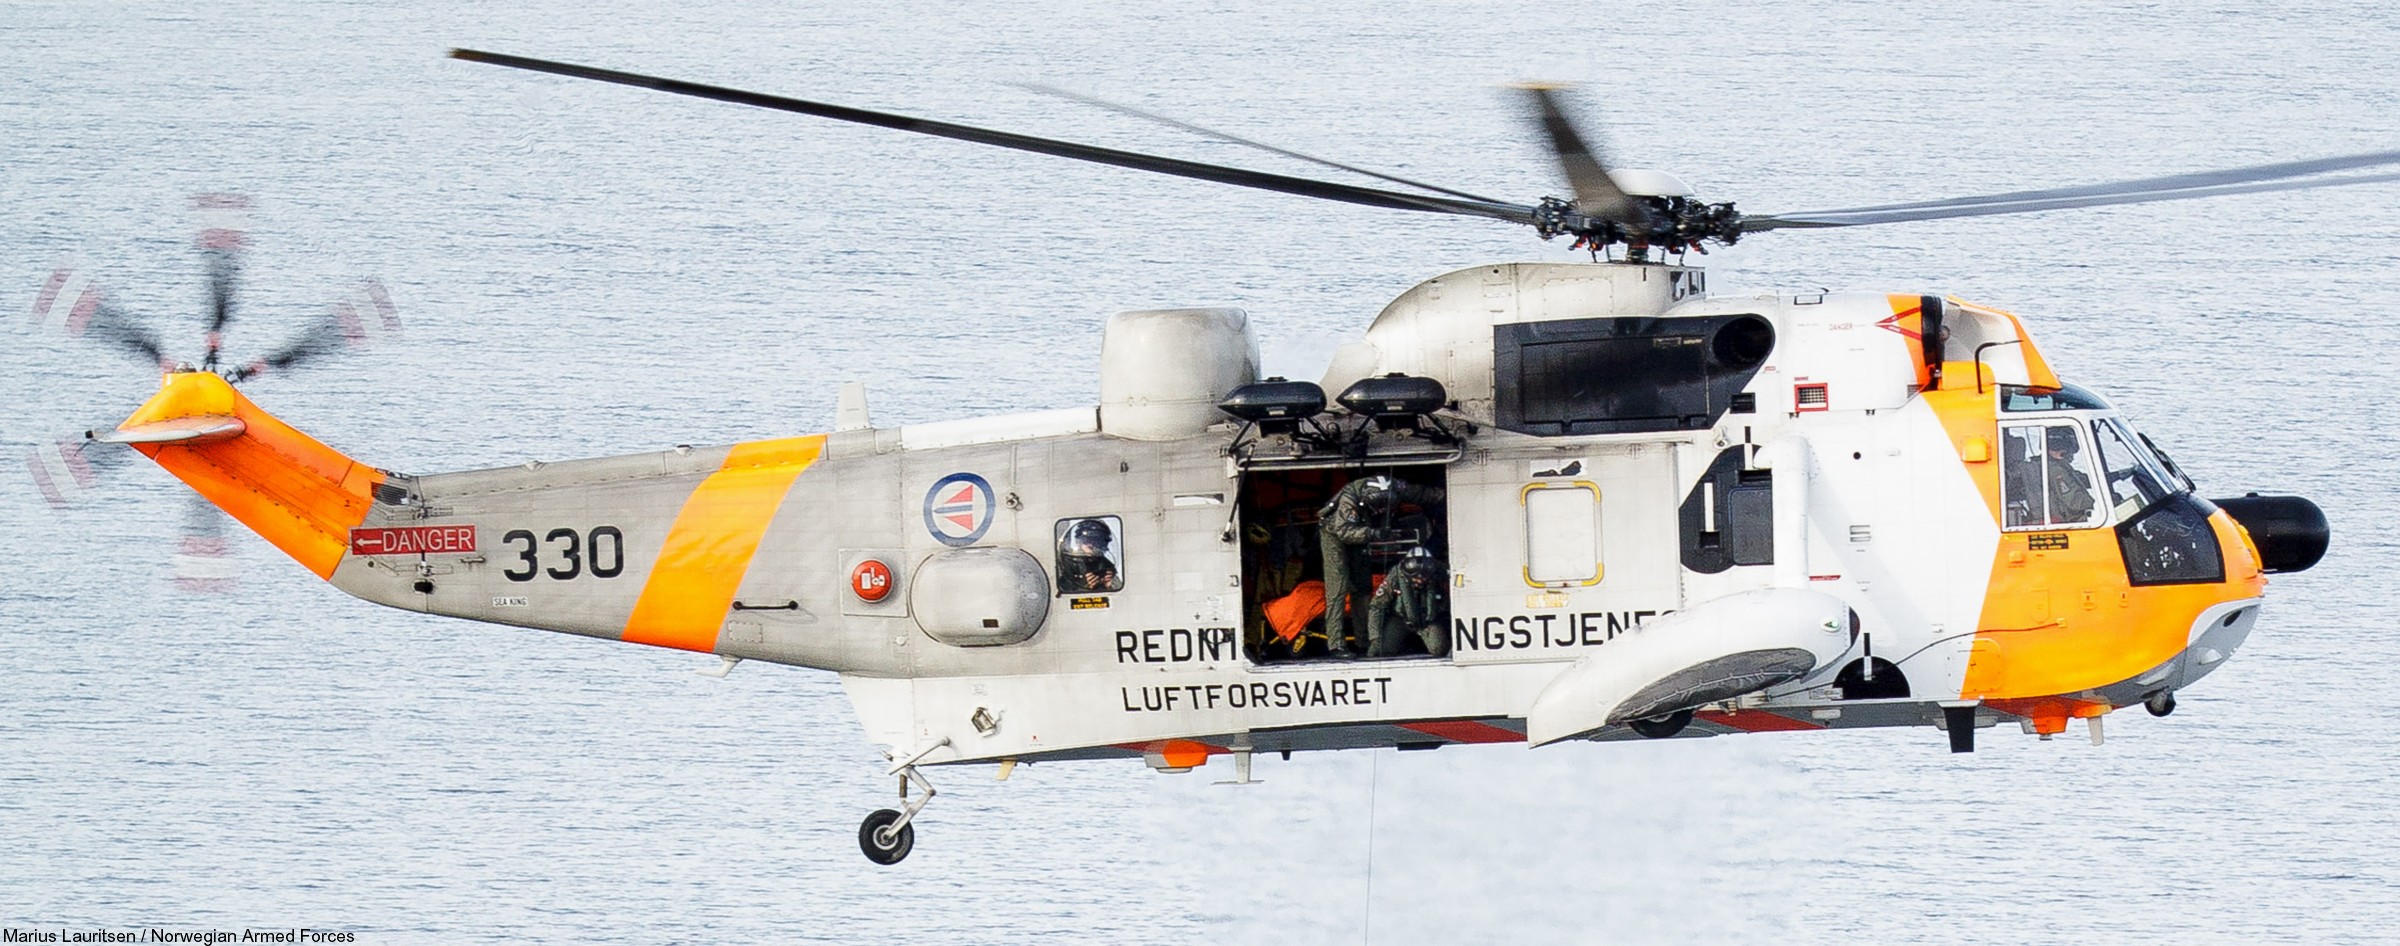 westland ws-61 sea king royal norwegian air force sar rescue 330 squadron skvadron luftforsvaret 04